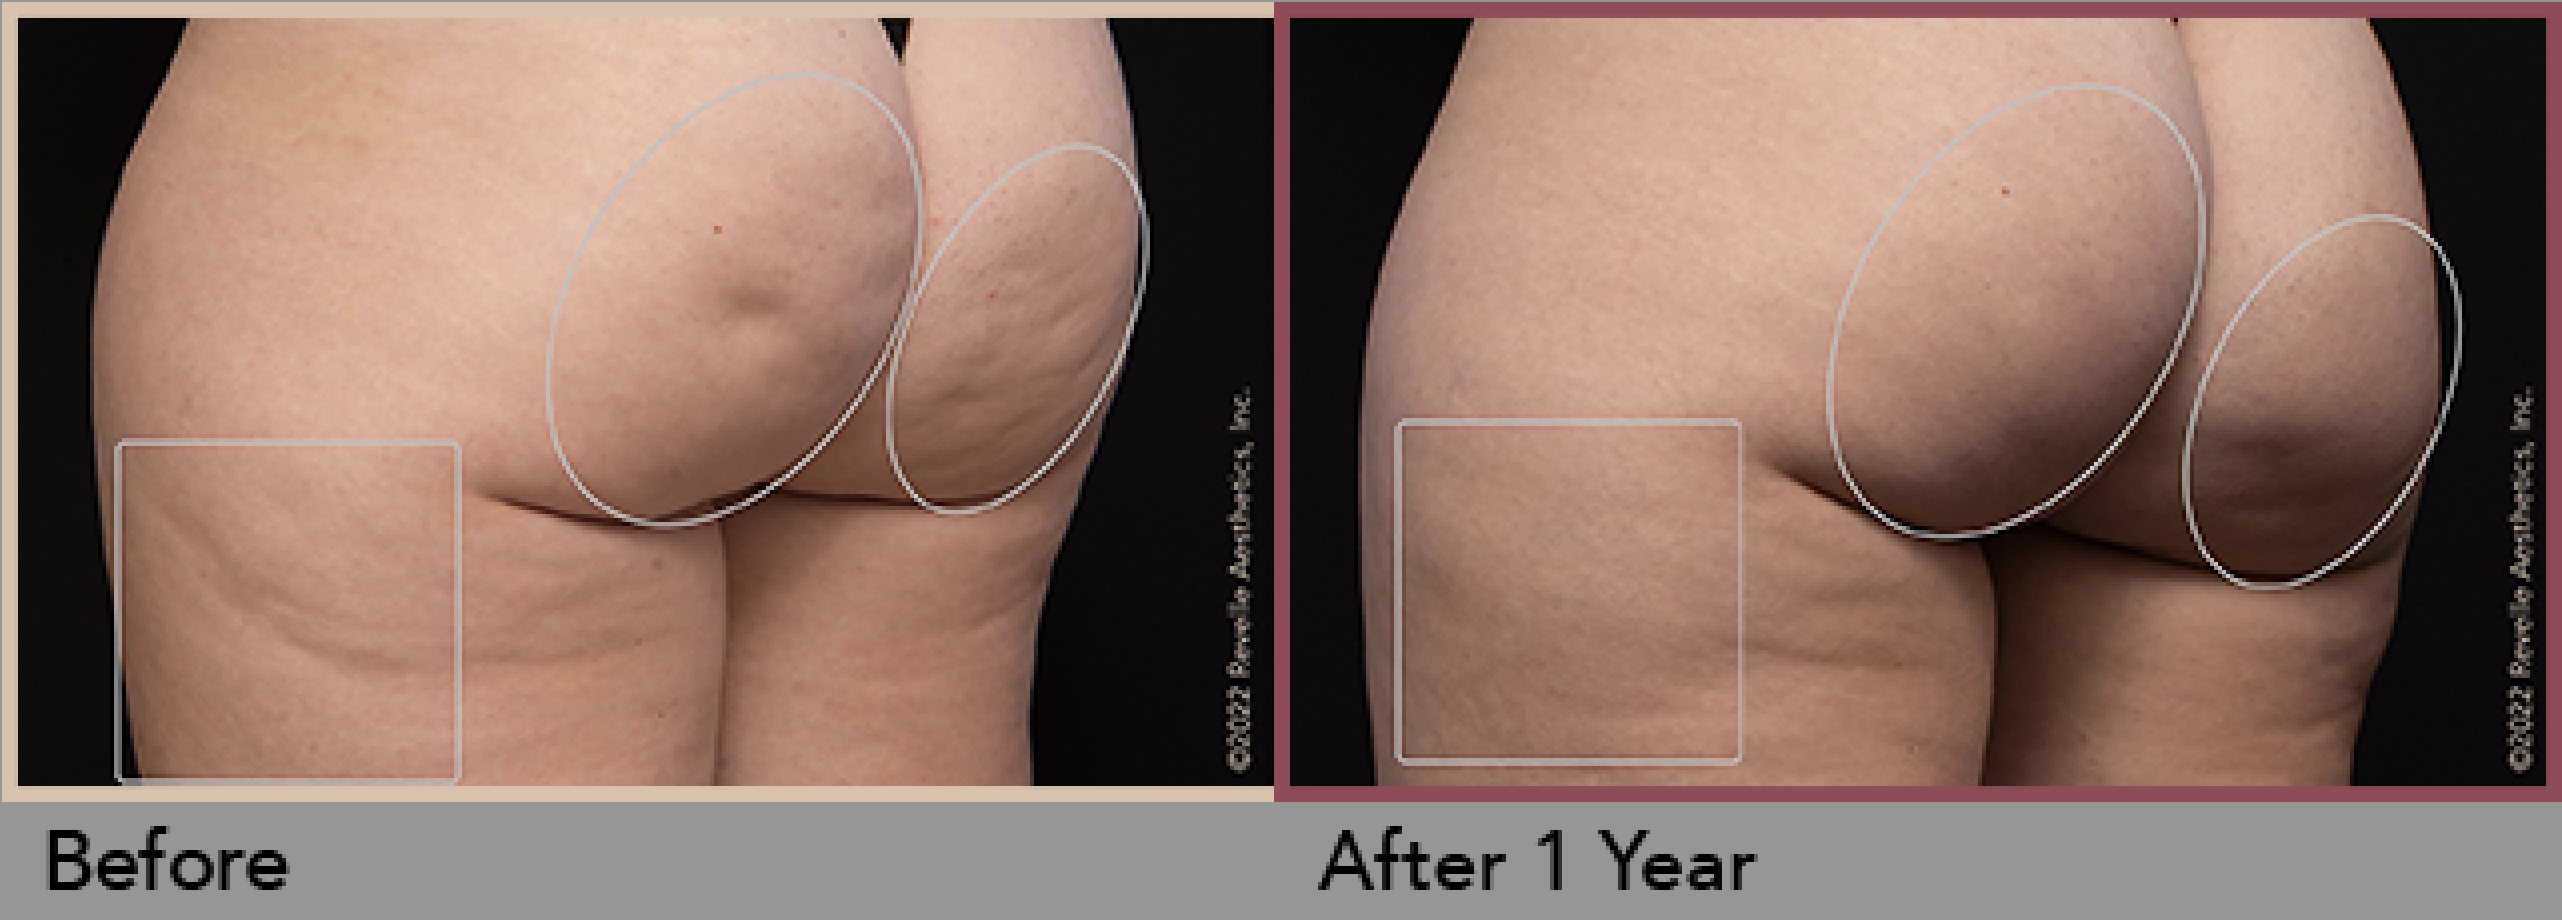 Avéli™ Long-Term Cellulite Reduction Procedure